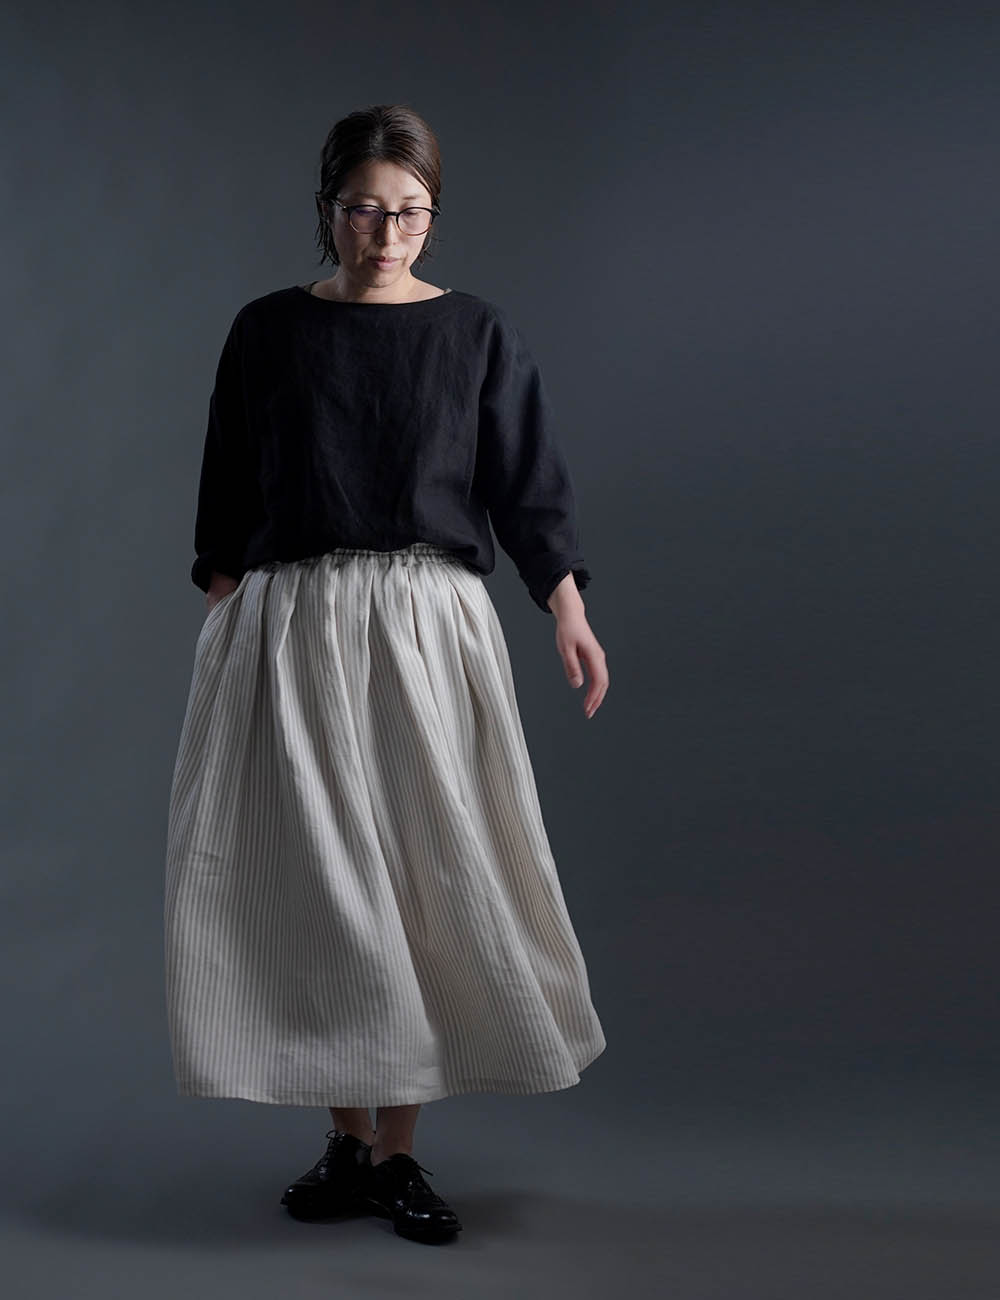 【wafu】Linen Skirt やわらか高密度ヘリンボーンストライプ スカート / ベージュ&ホワイト ストライプ柄 s020b-stp2